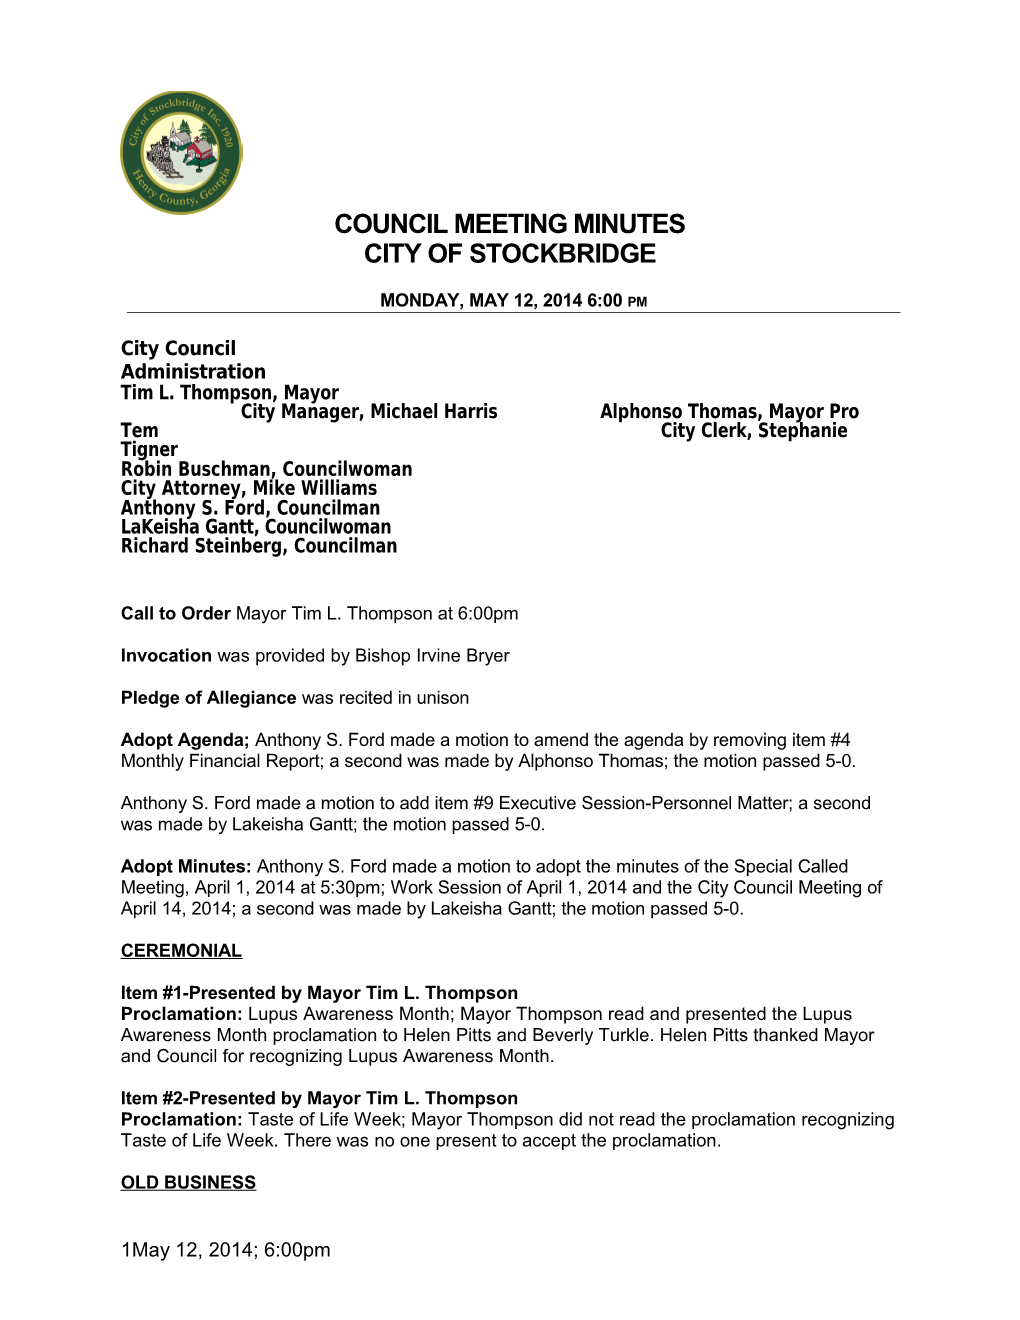 Council Meetingminutes